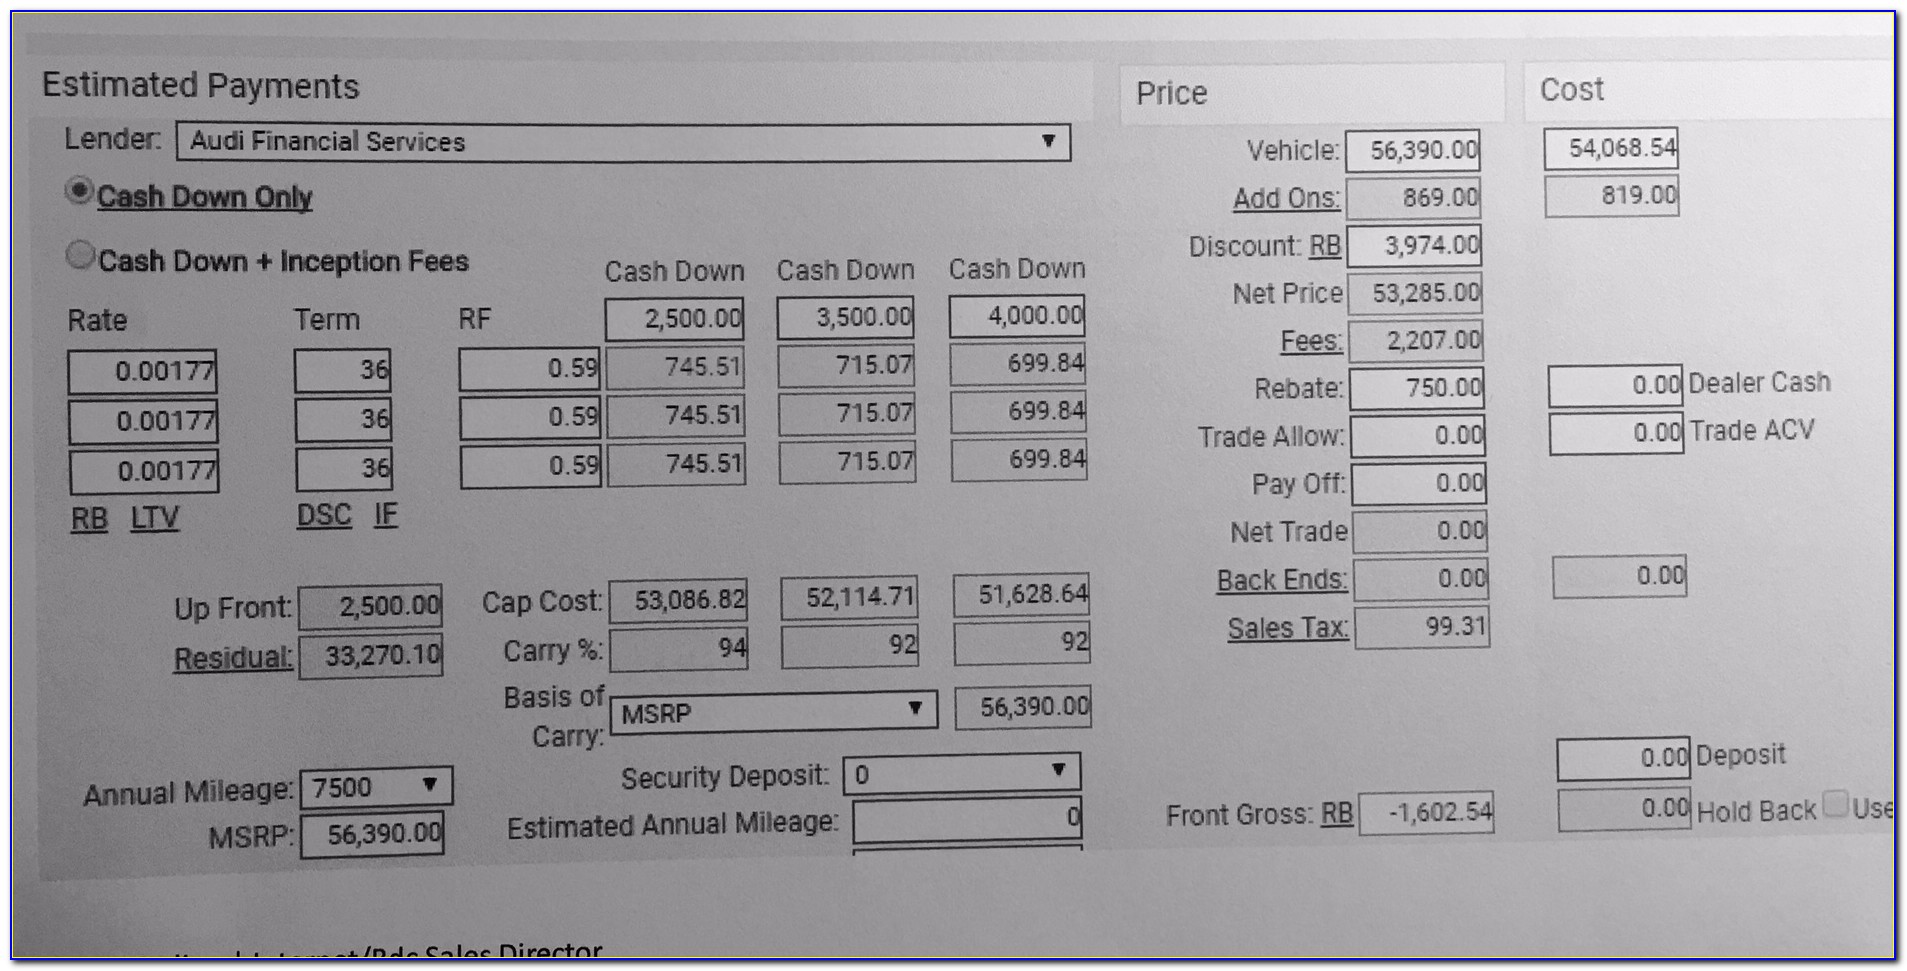 2018 Audi Q5 Dealer Invoice Price